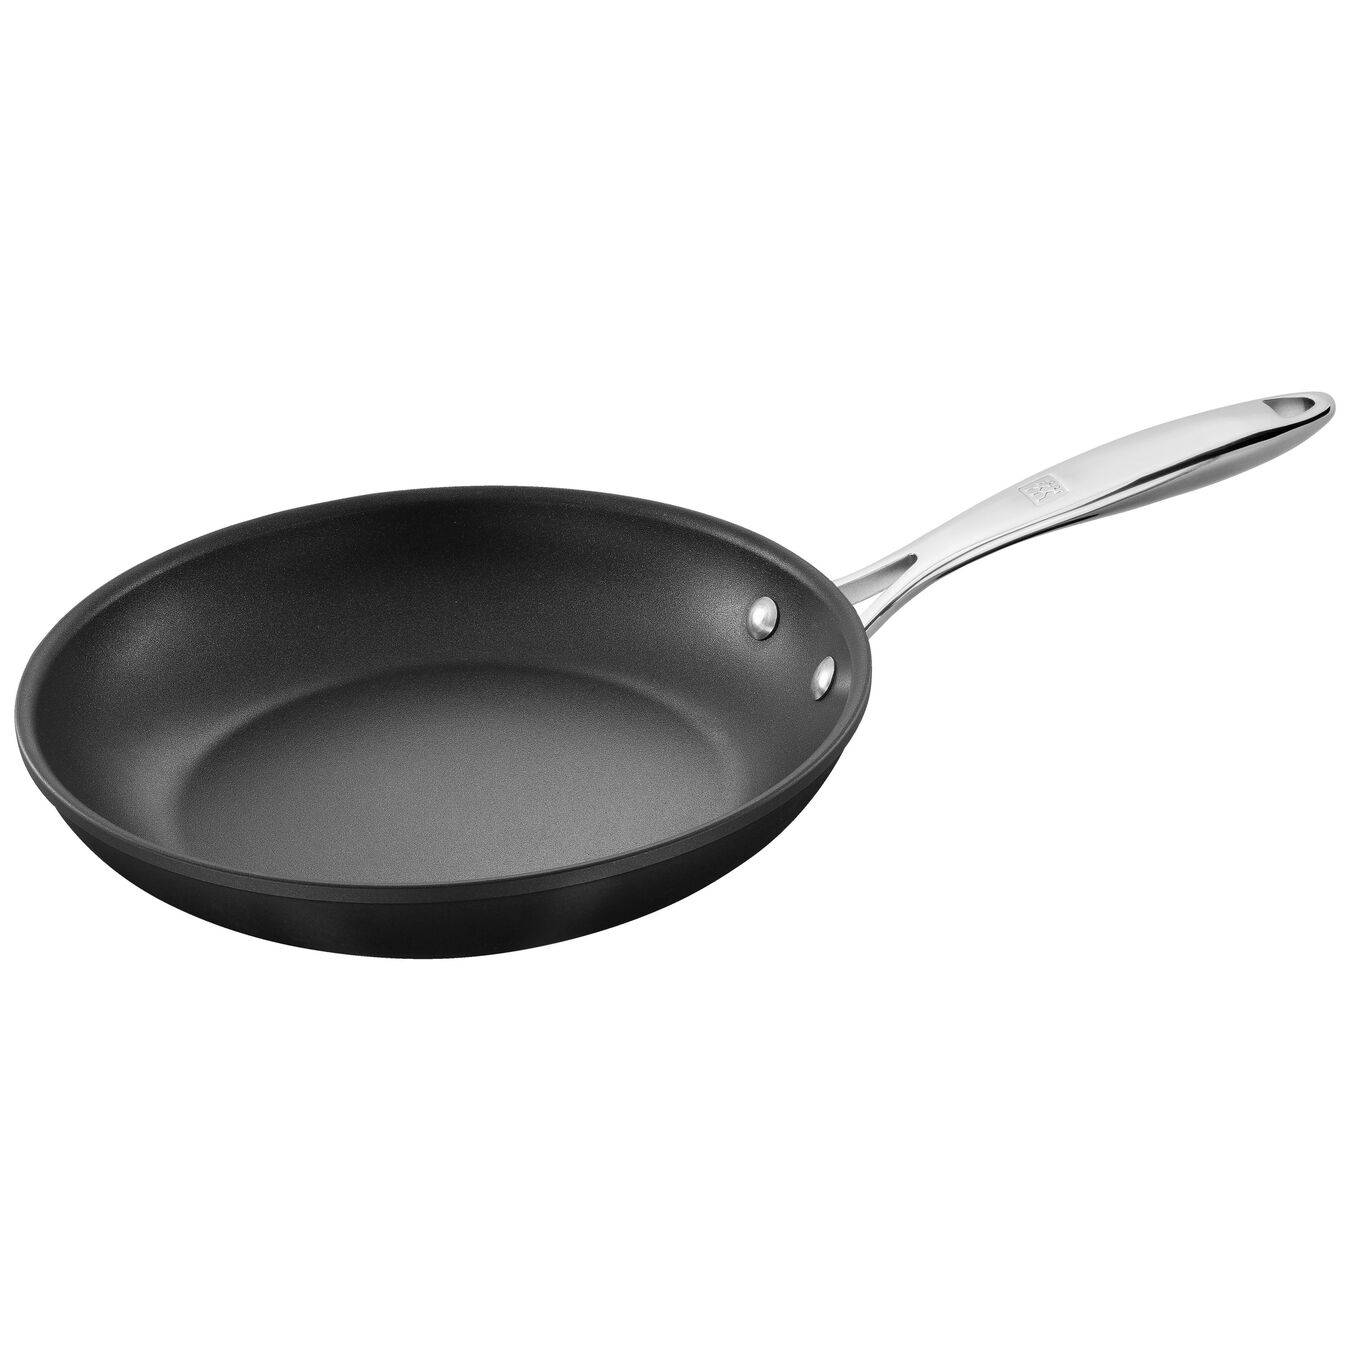 26 cm / 10 inch aluminium Frying pan,,large 1